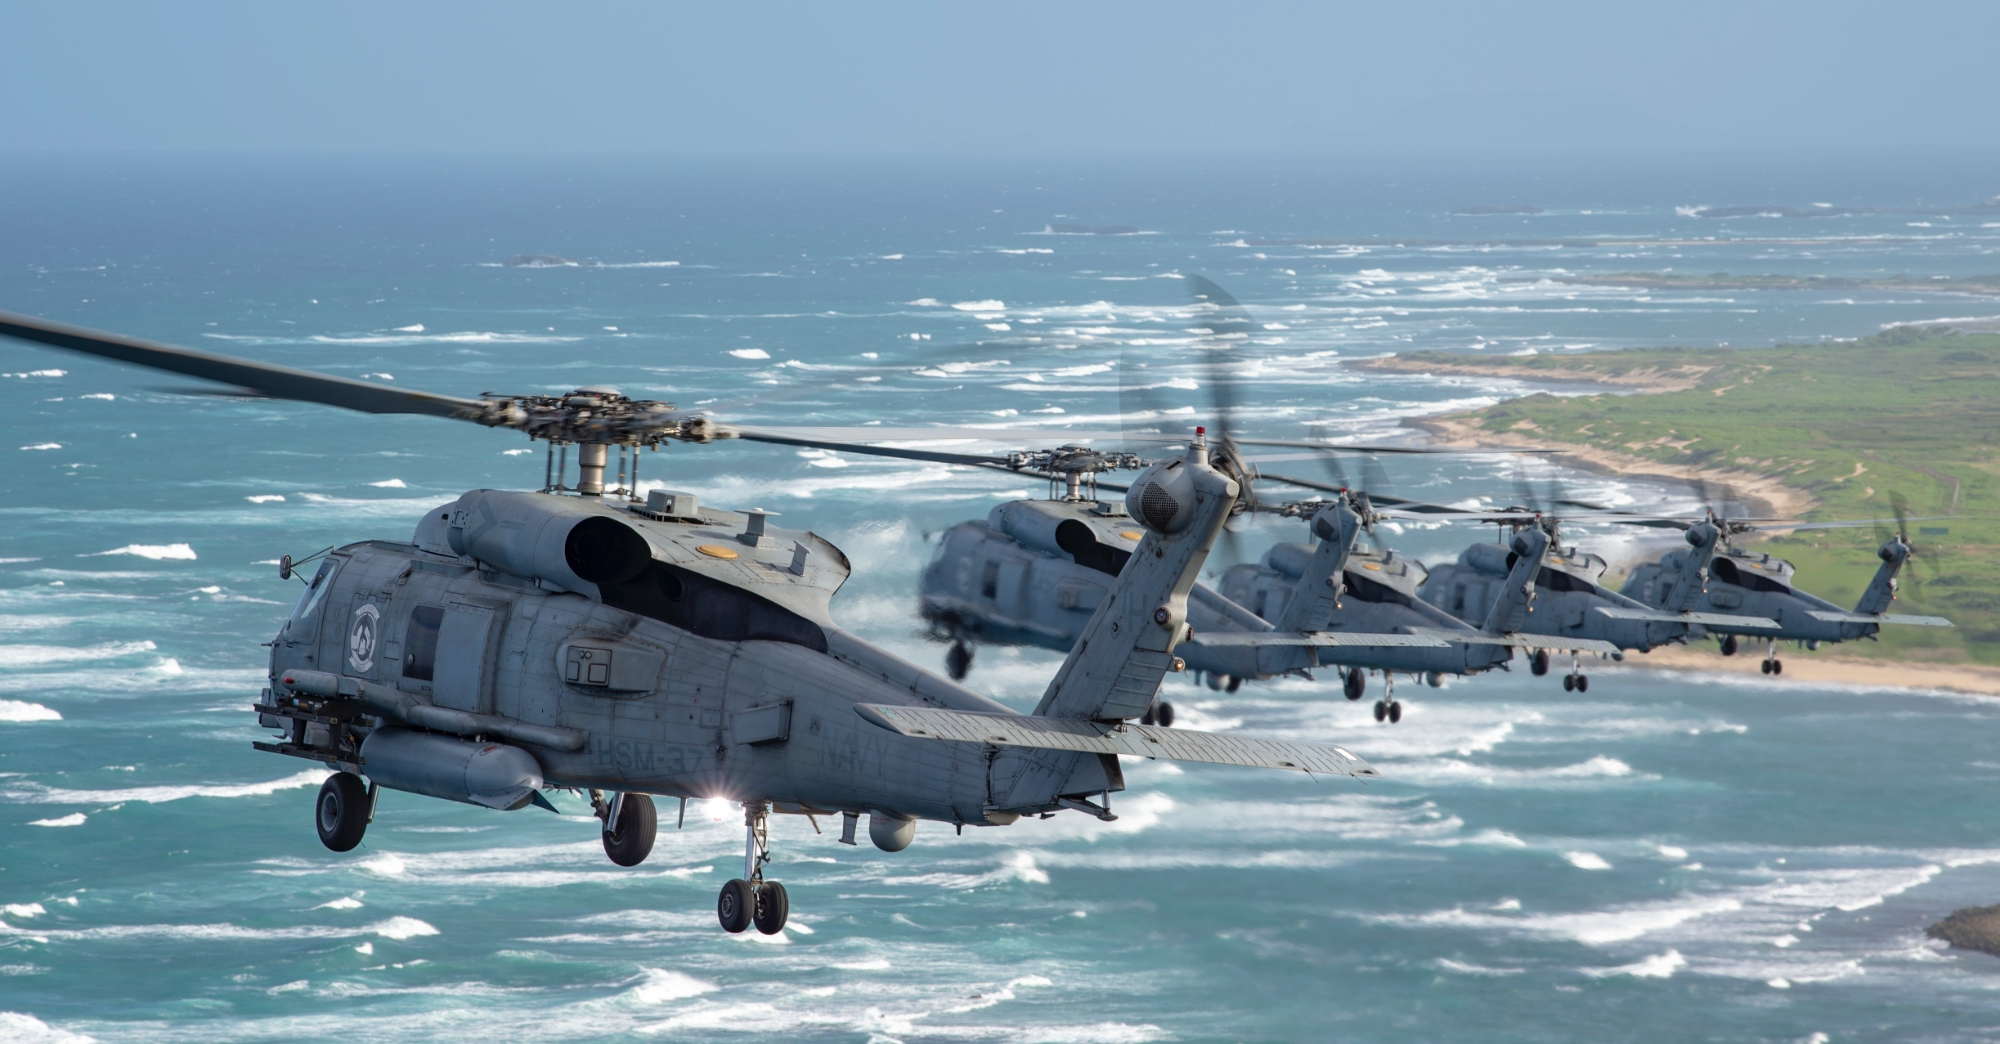 Contratto da 380 milioni di dollari: la Spagna ordina 8 elicotteri Sikorsky MH-60R Seahawk alla Lockheed Martin per sostituire gli elicotteri Sikorsky SH-3 Sea King